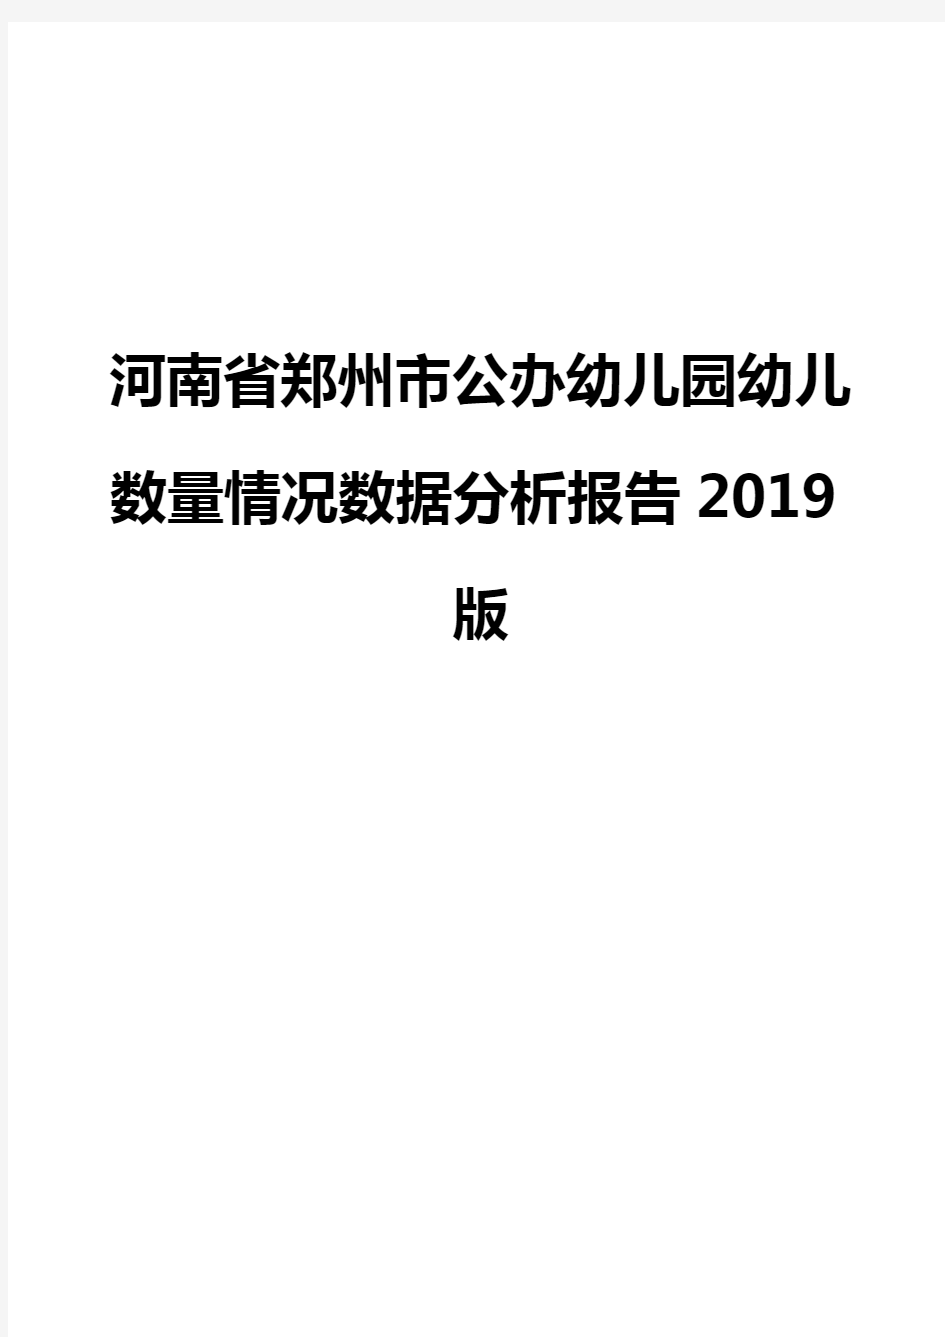 河南省郑州市公办幼儿园幼儿数量情况数据分析报告2019版